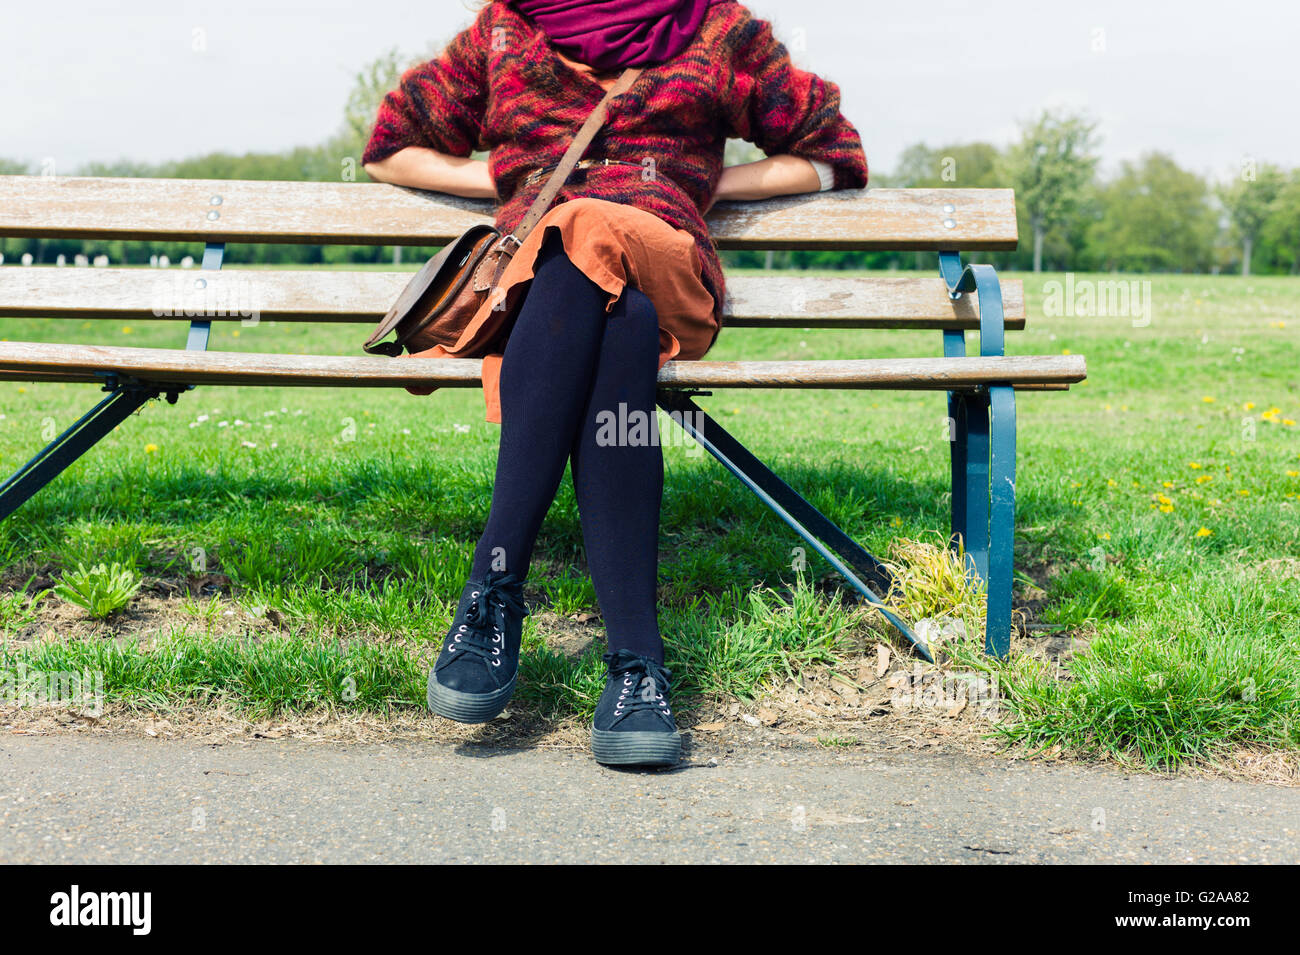 Un joven está sentado y apoyado sobre un banco fuera en un parque Foto de stock